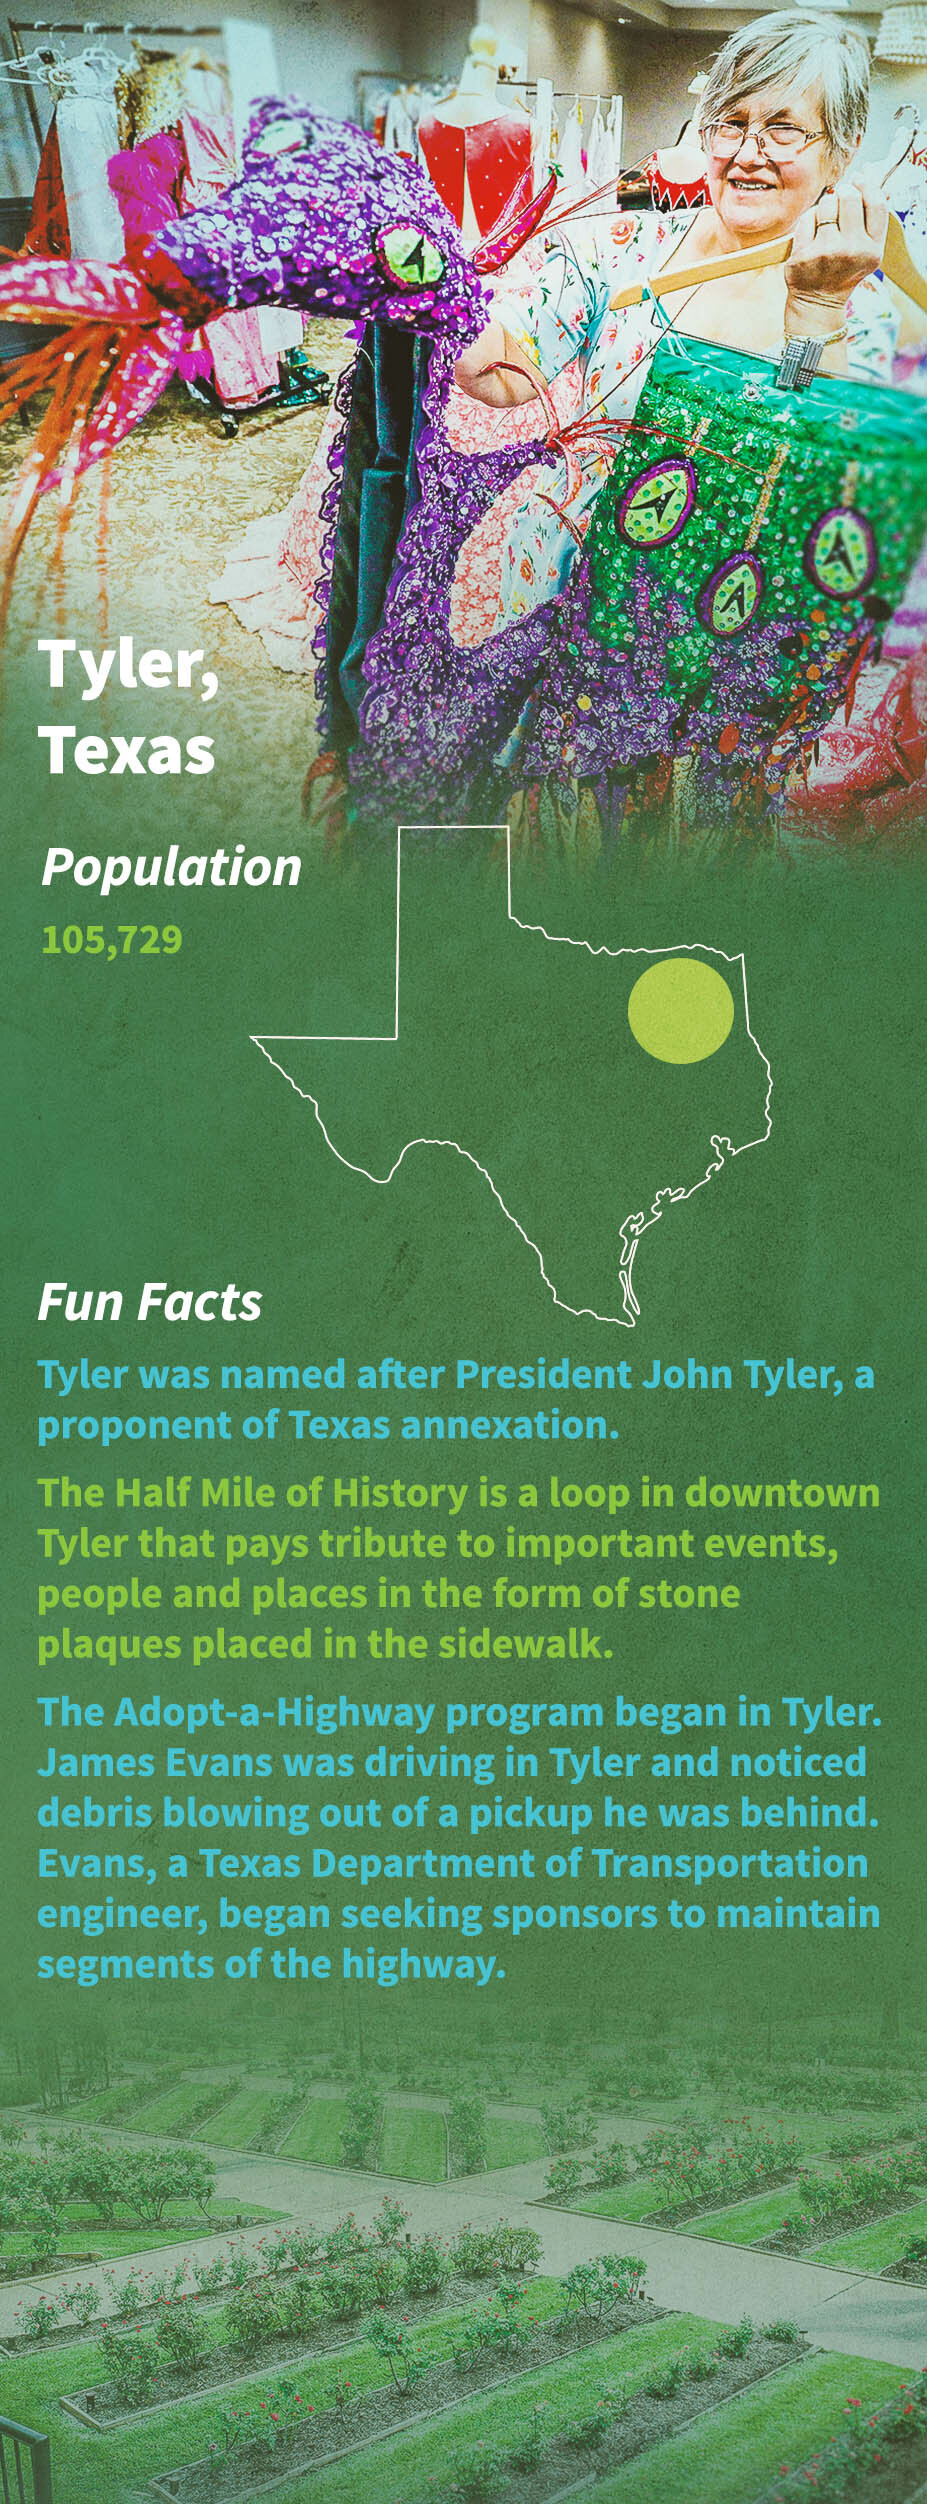 Tyler Texas Fun Facts